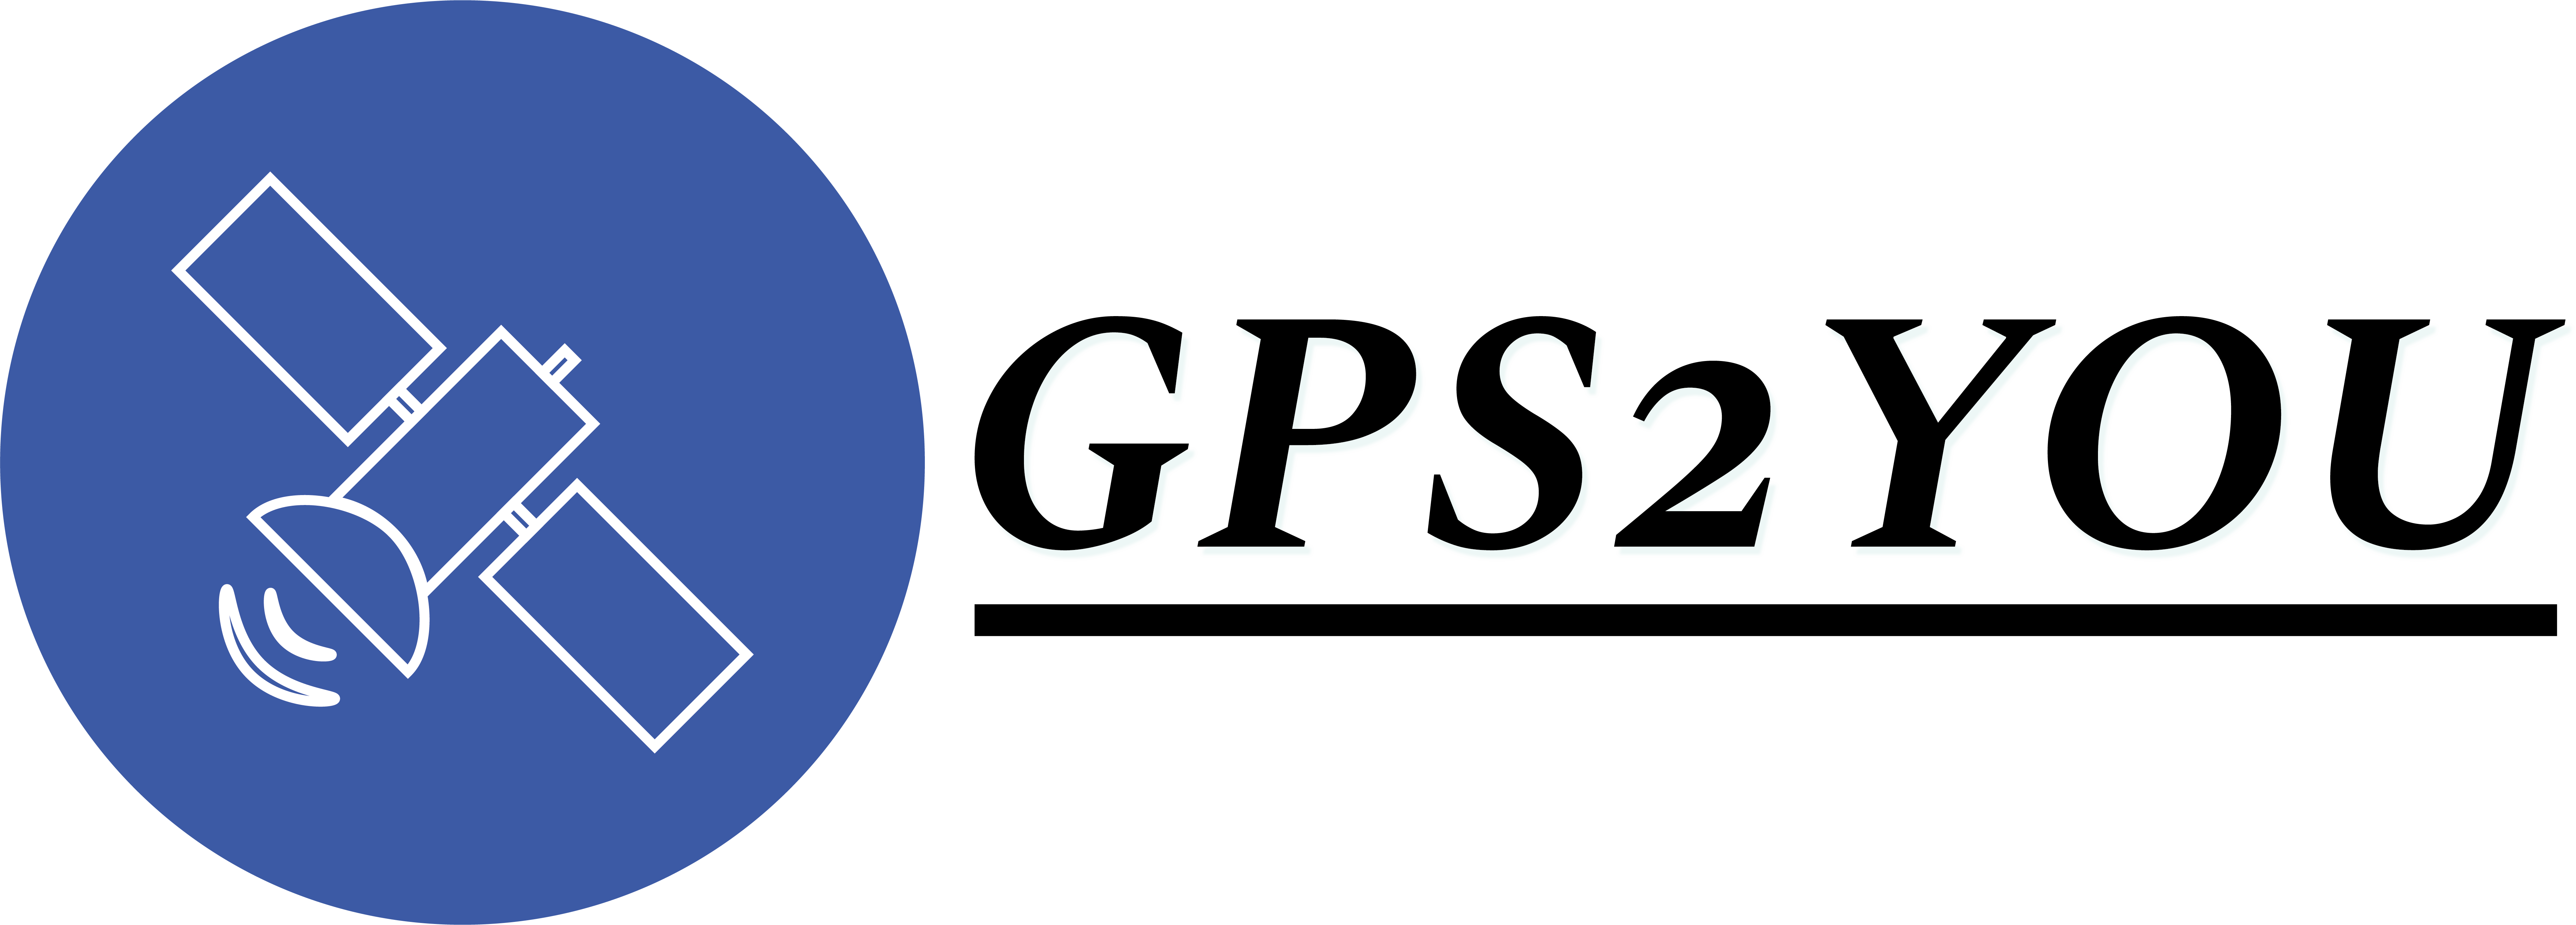 gps2you logo